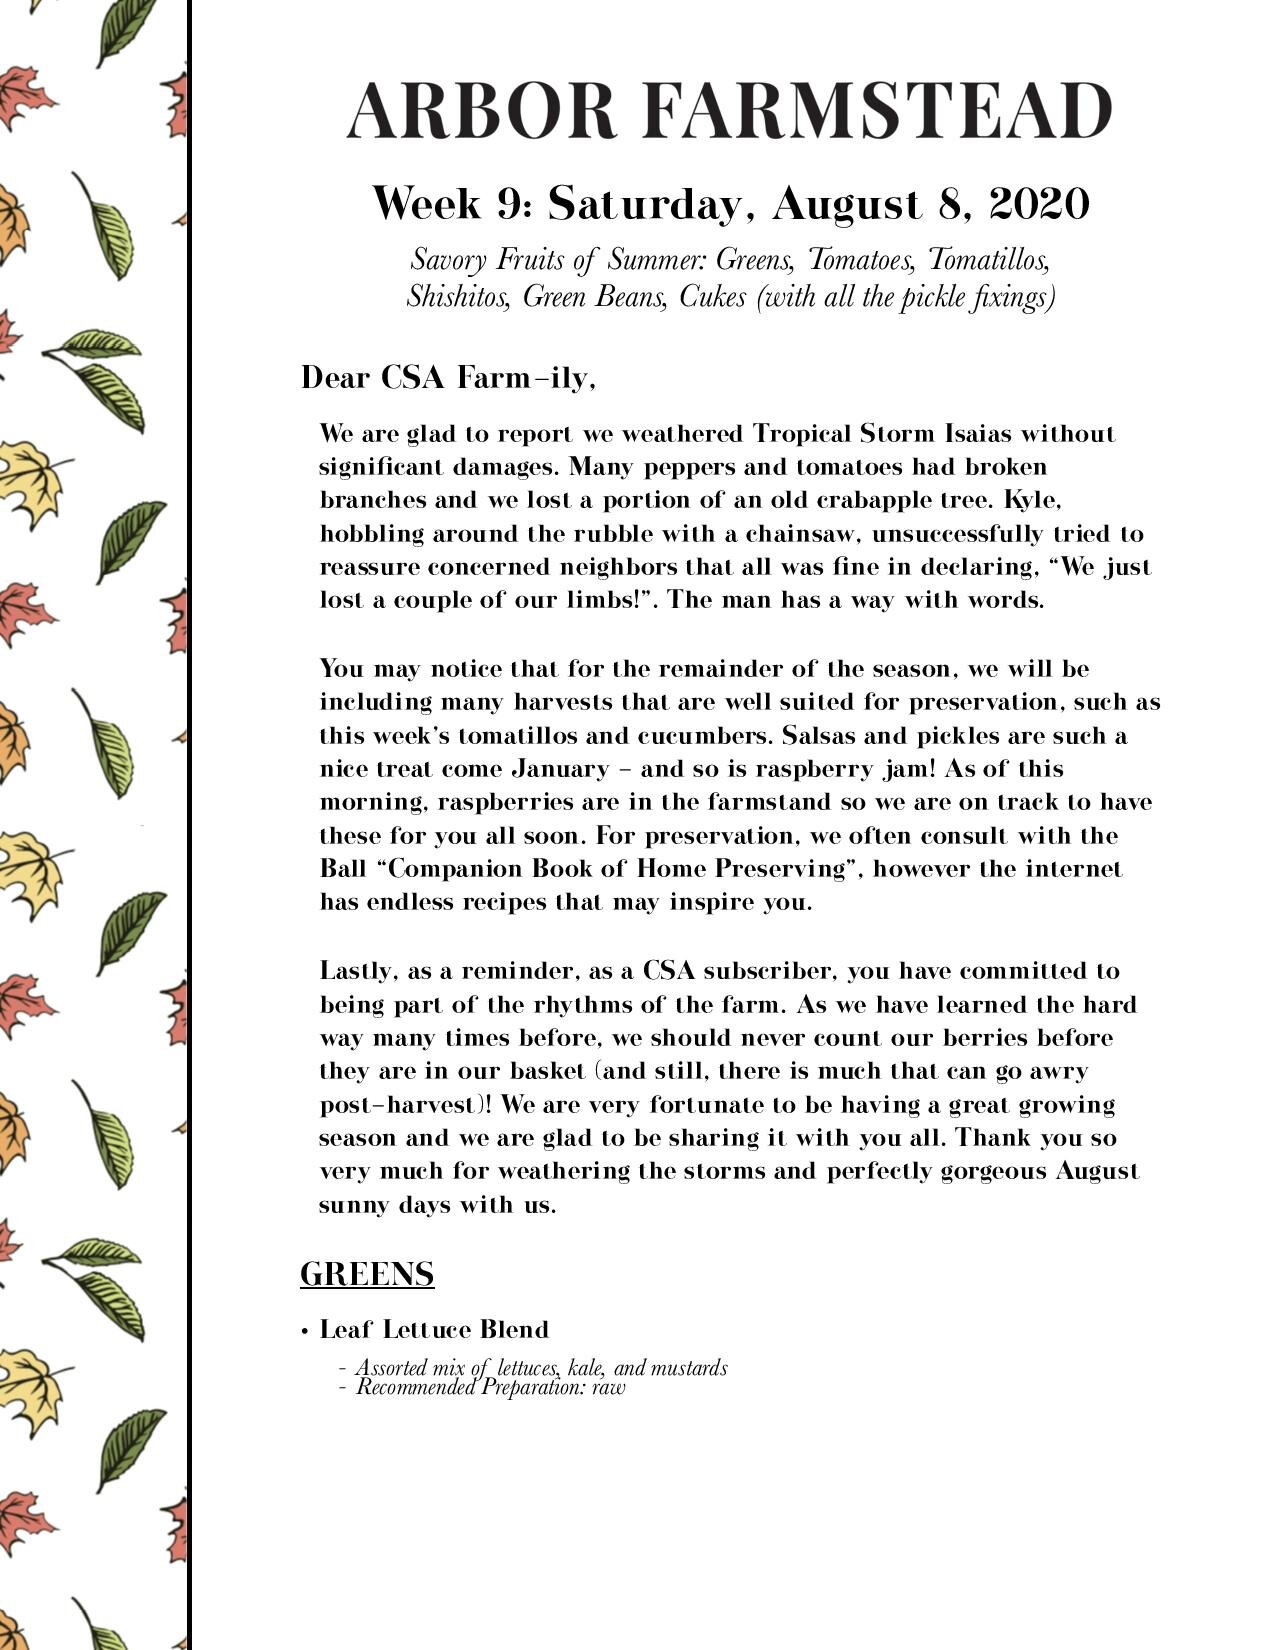 Week 9 - Saturday, August 8, 2020-page-001.jpg